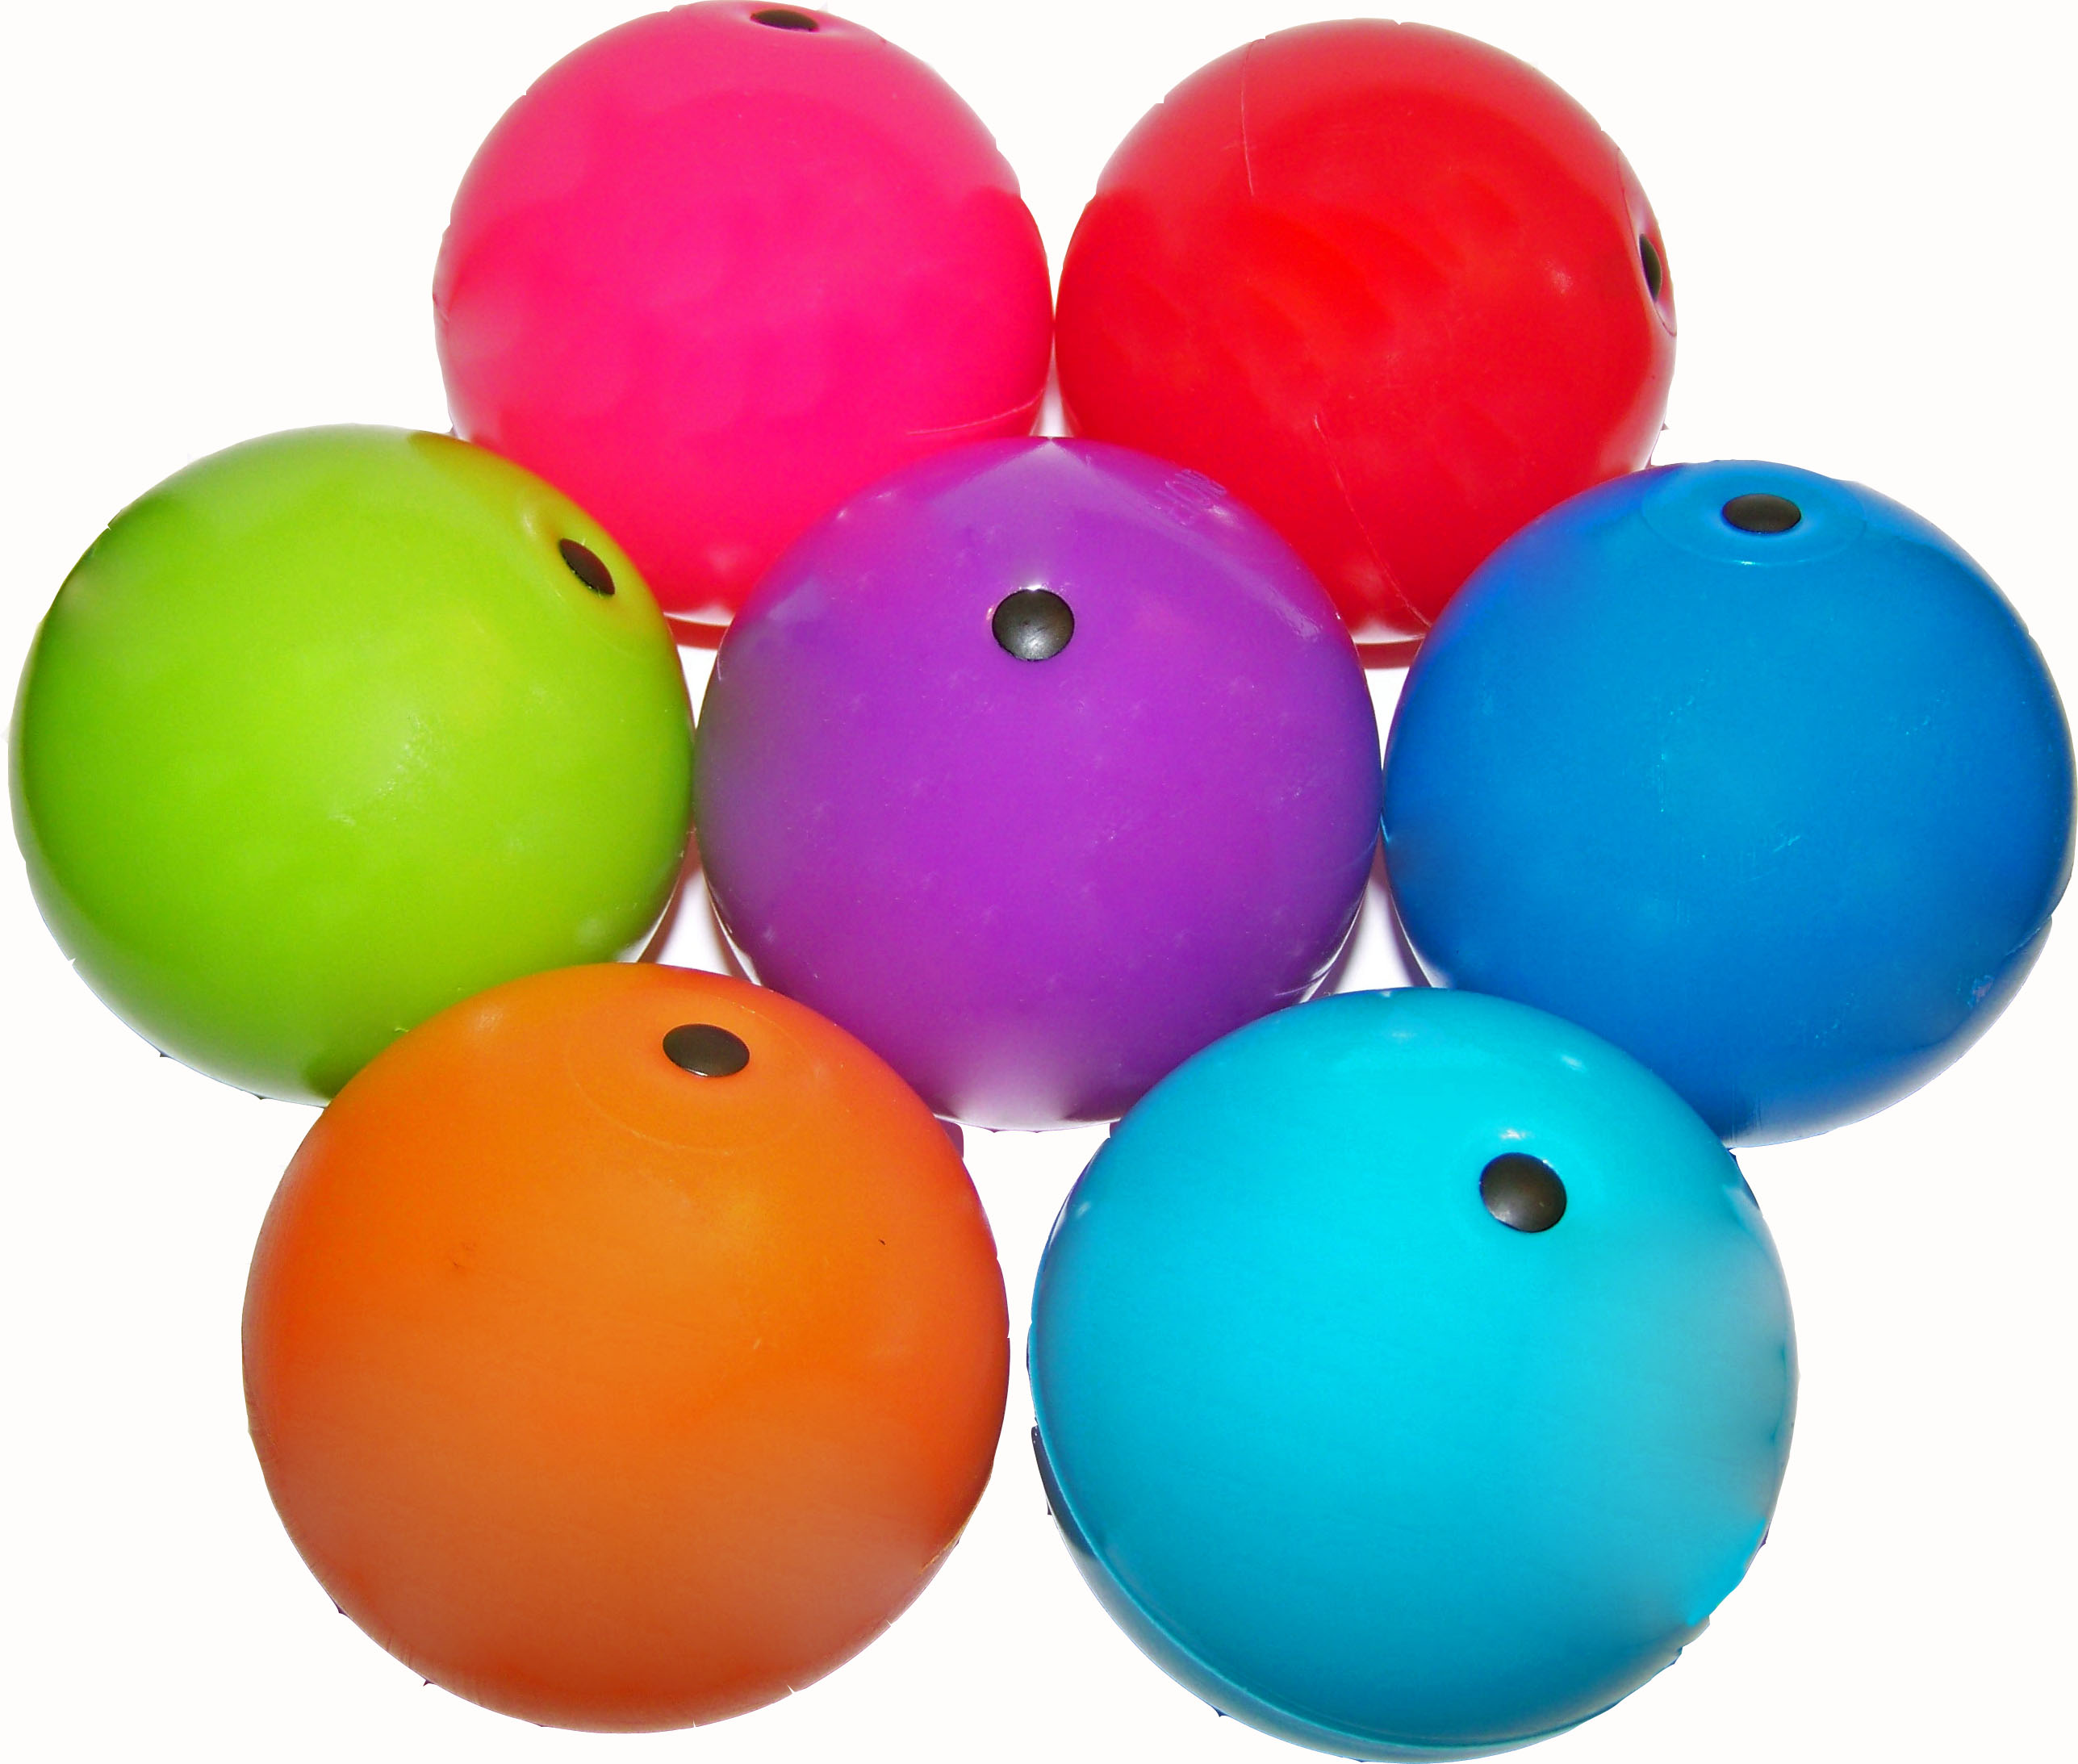 russian balls - hybrid juggling balls